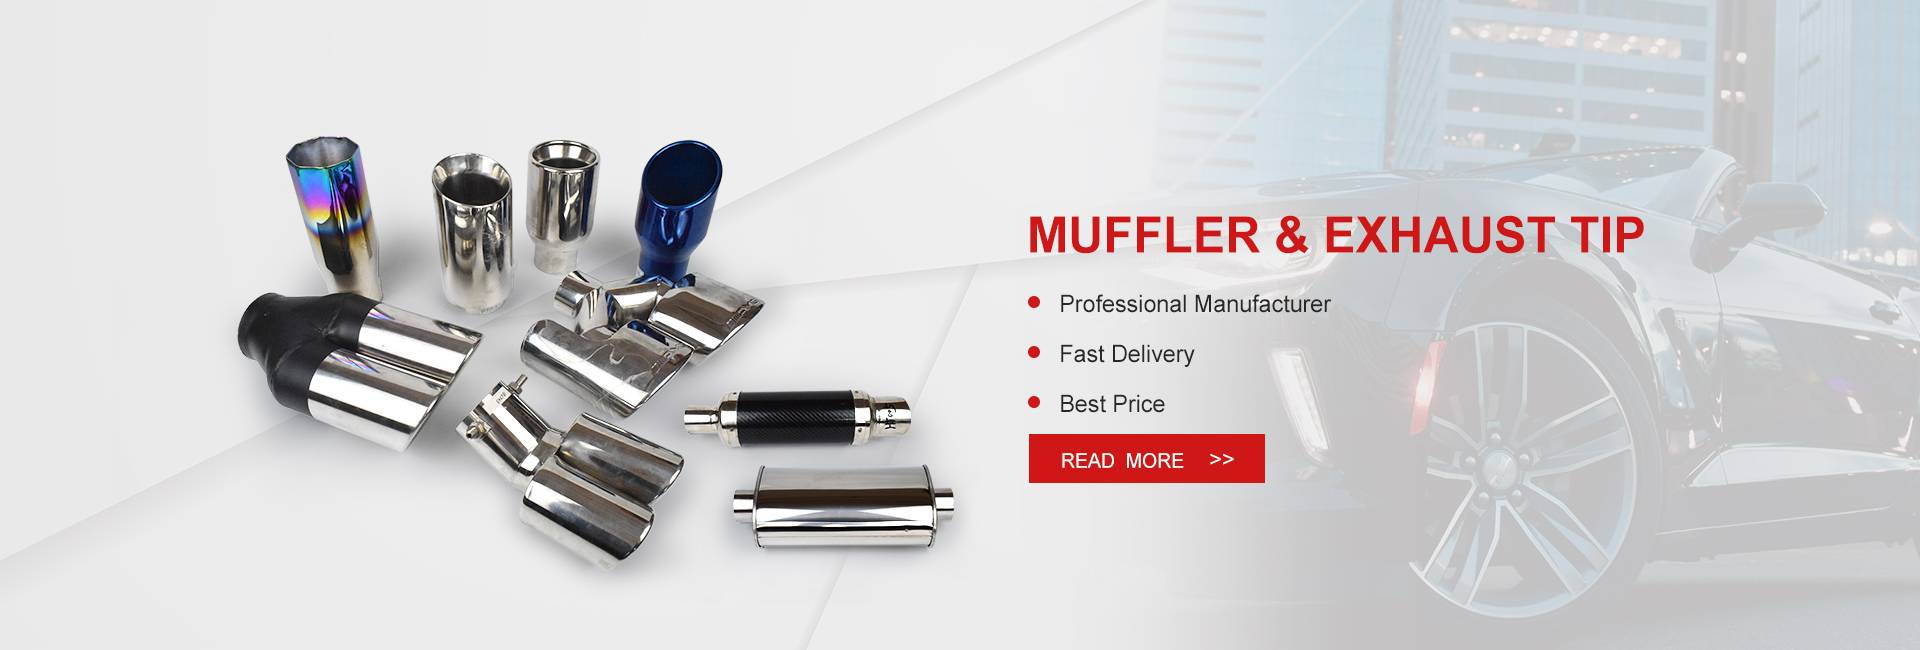 Muffler & Exhaust Tip